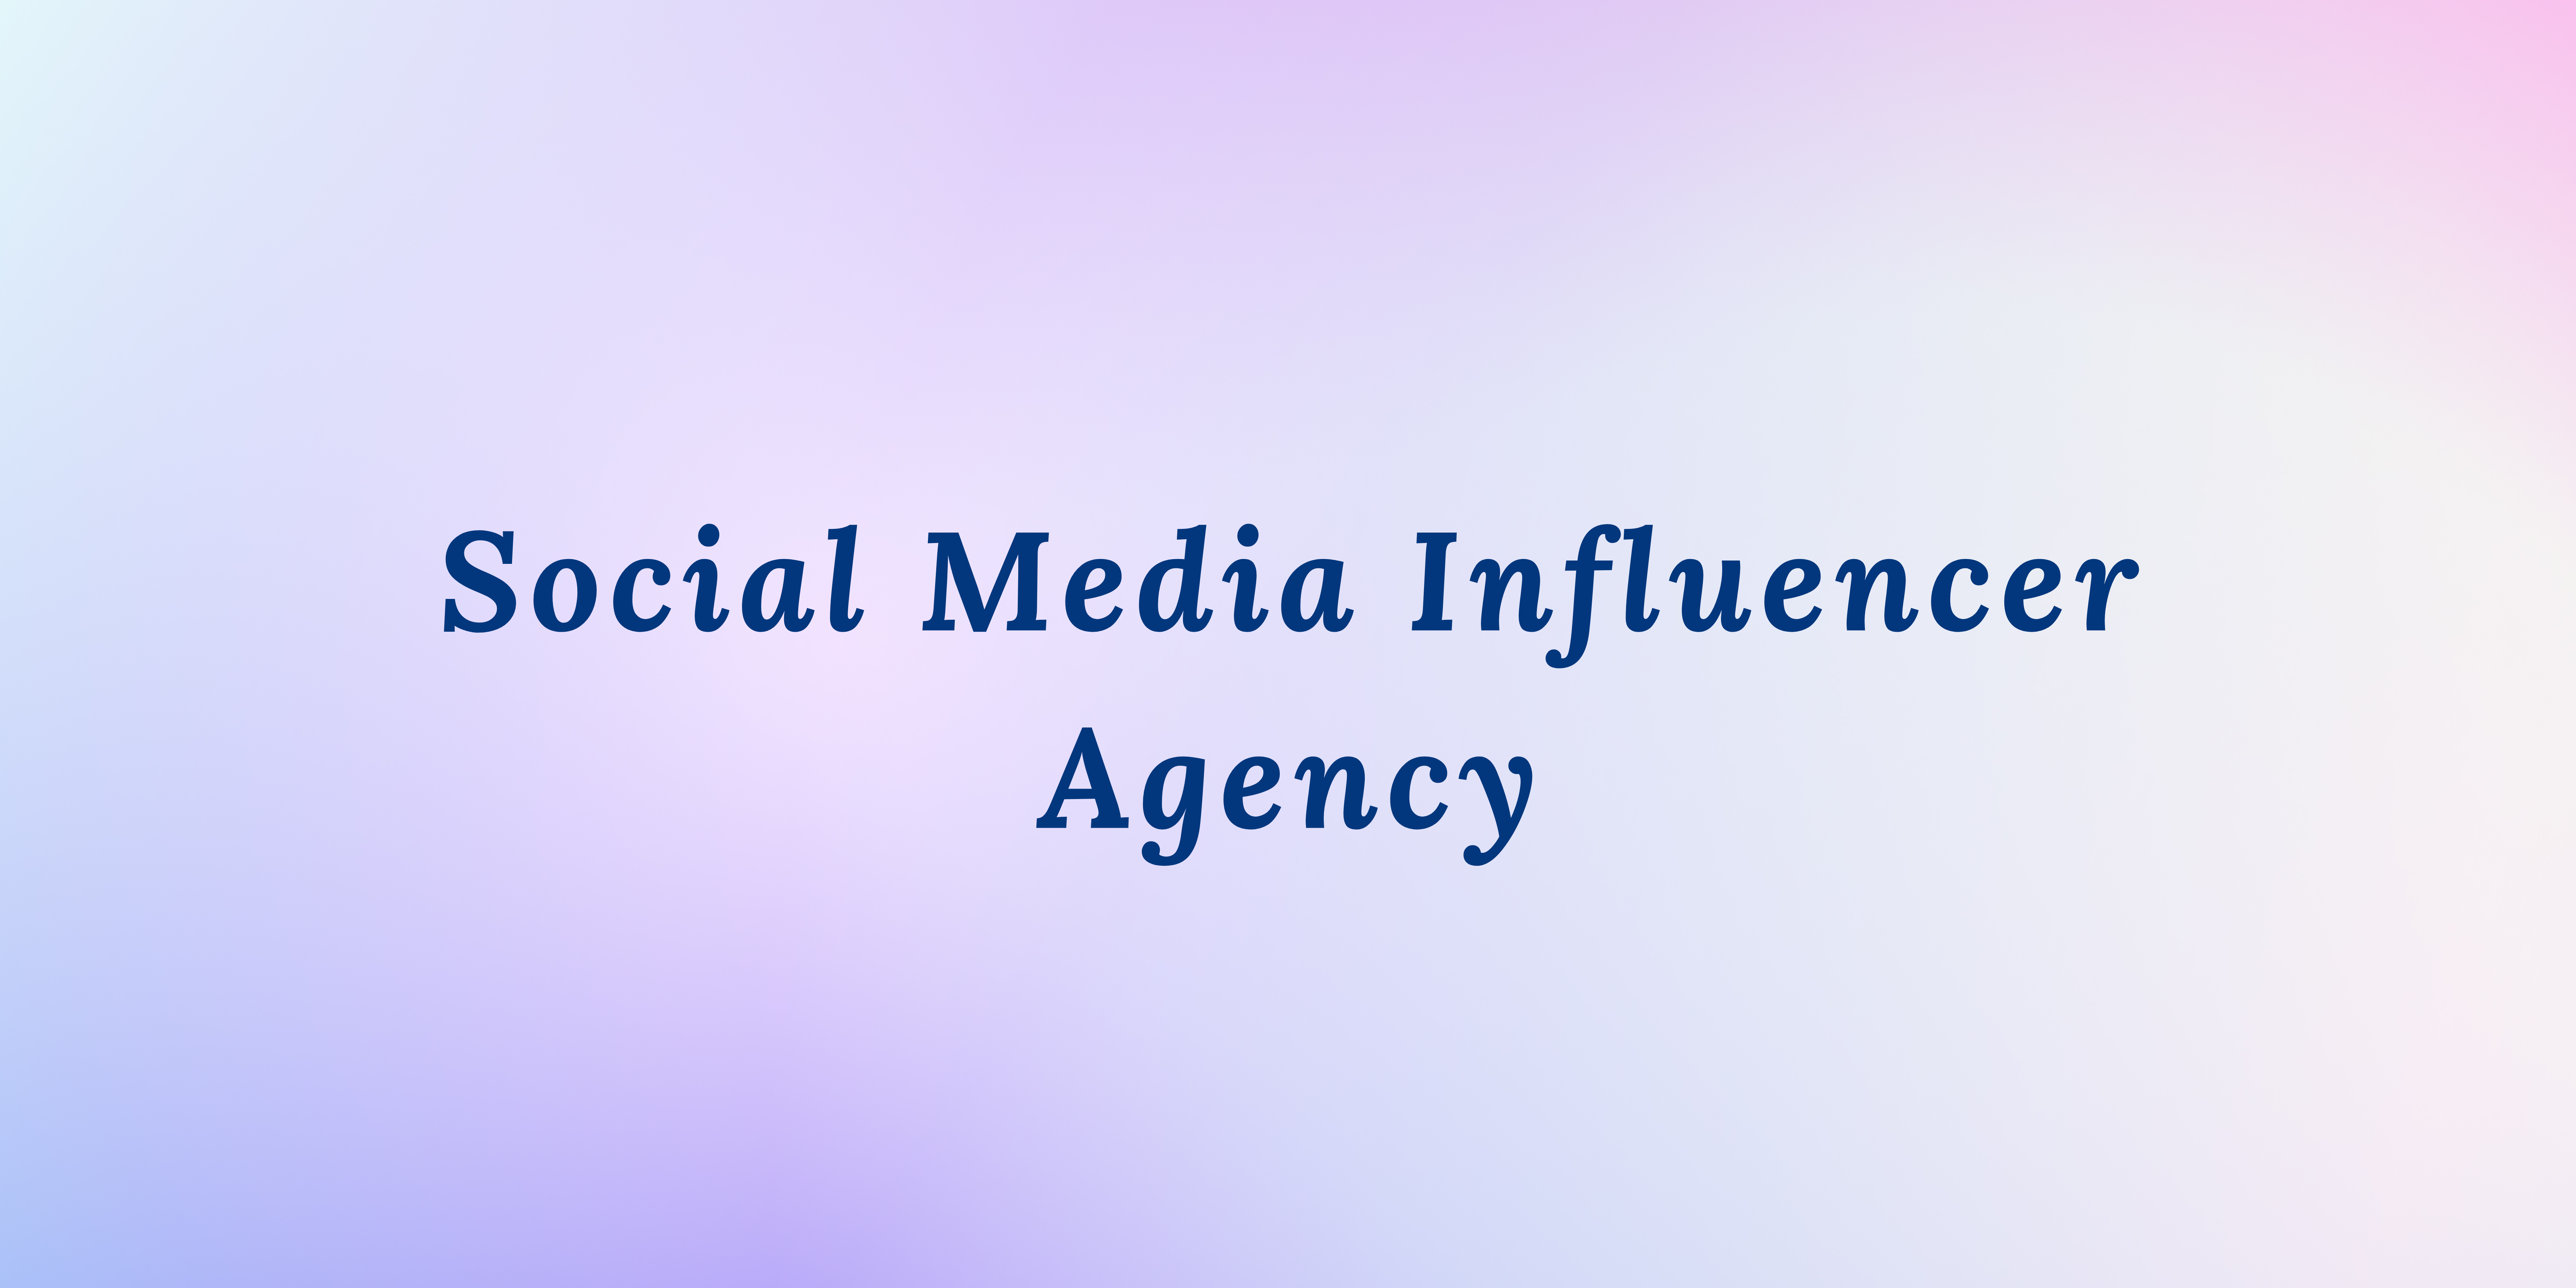 Social Media Influencer Agency